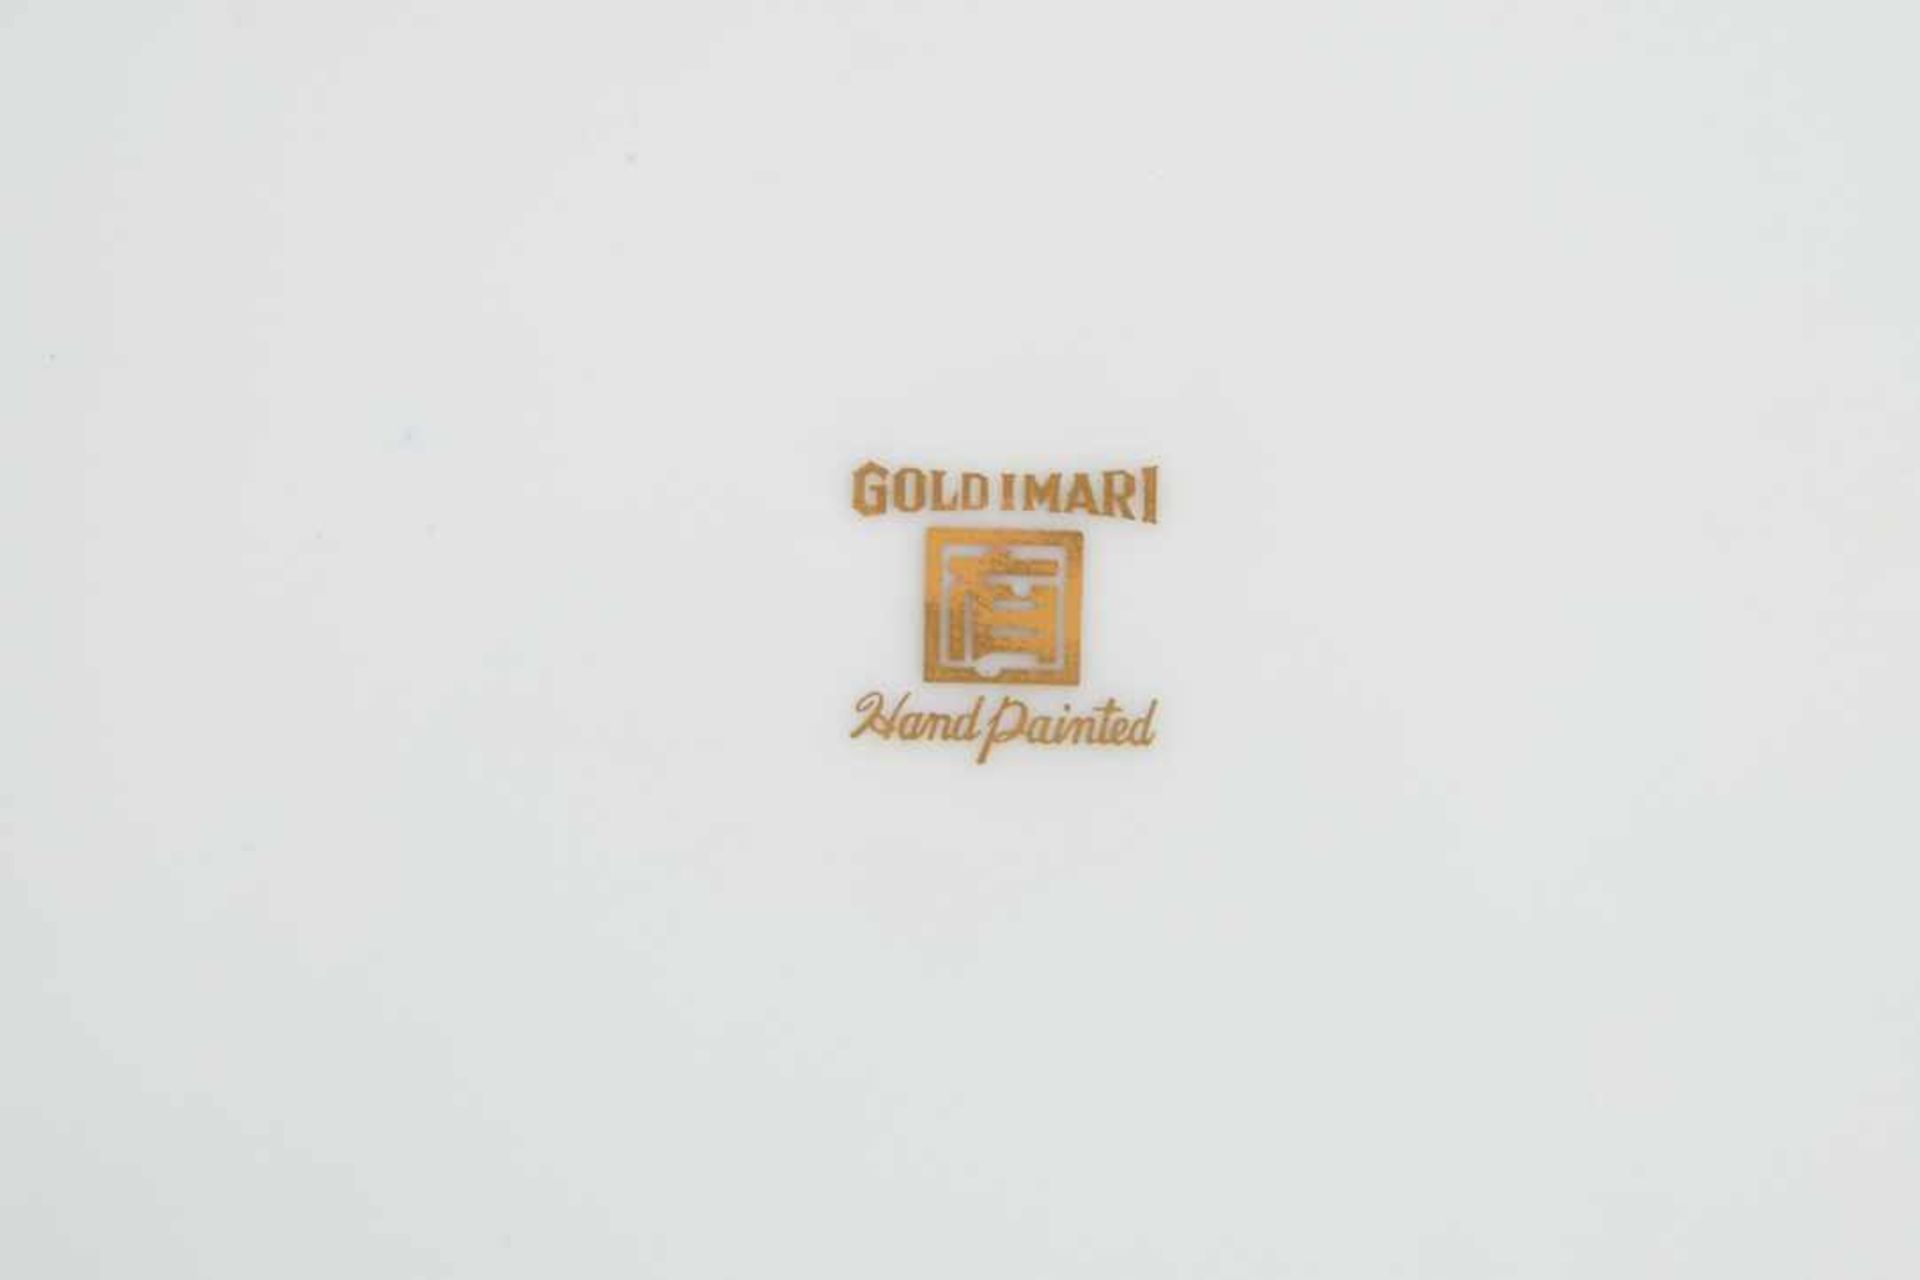 Gold-Imari. Zierteller. 20. Jahrhundert, gemarkt. Druchmesser 31,5 cm. - Bild 7 aus 7